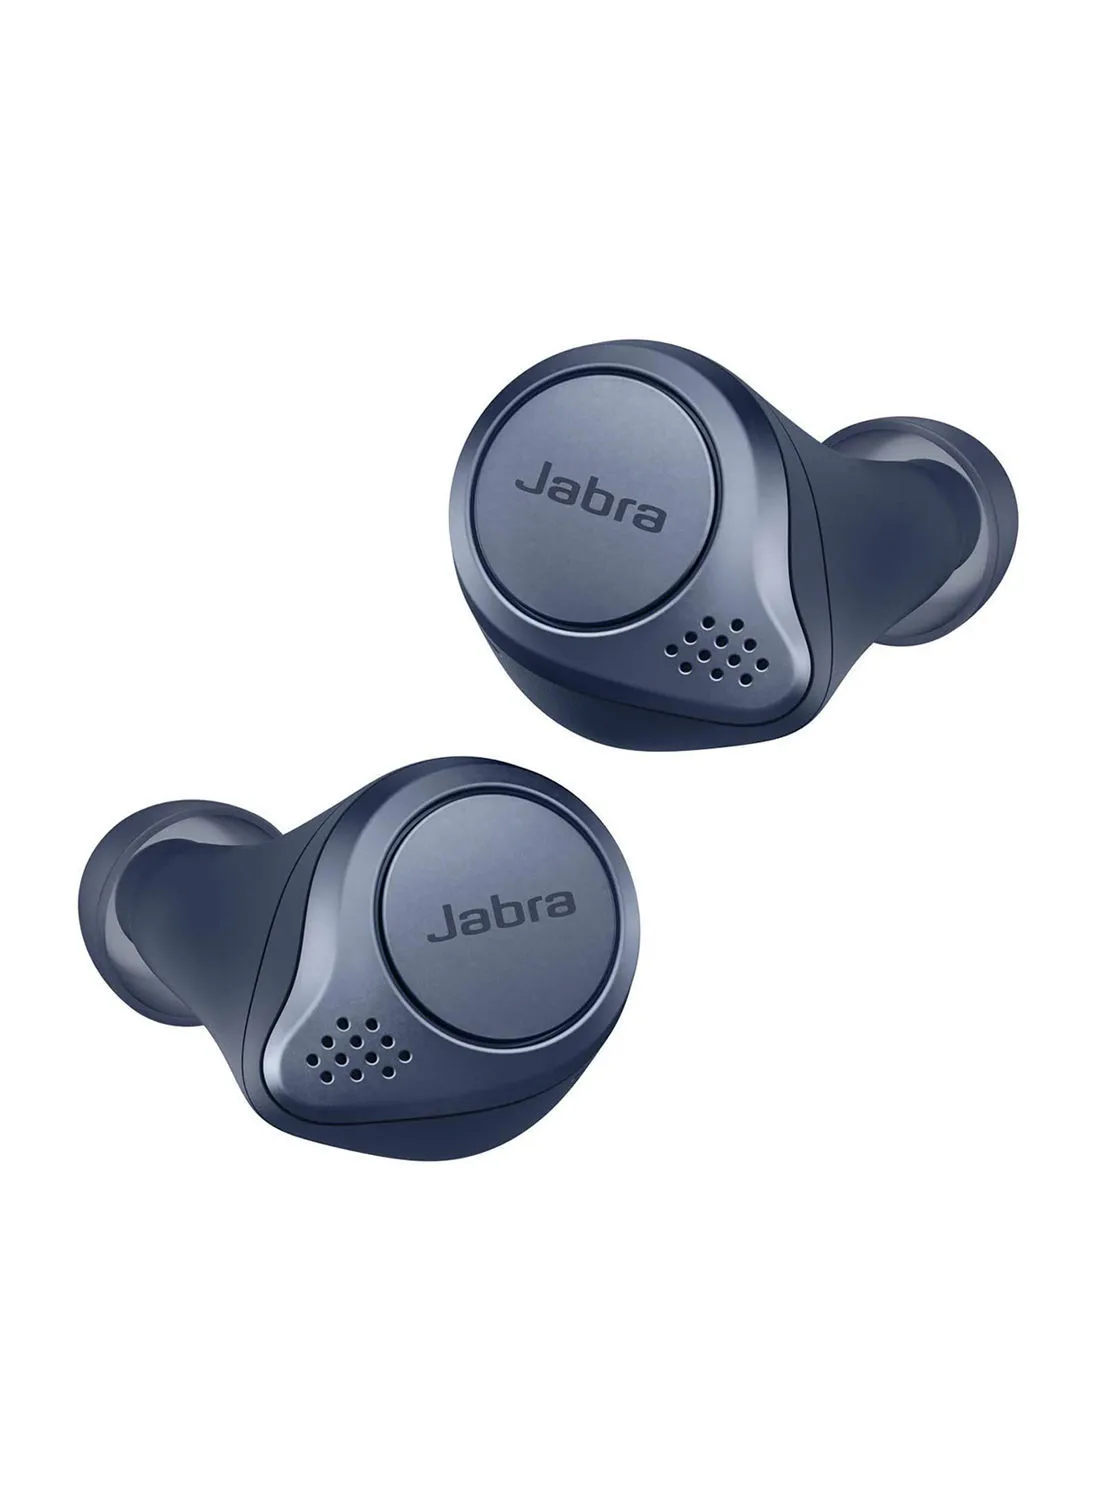 سماعات أذن Jabra Elite Active 75t - إلغاء الضوضاء النشط سماعات أذن رياضية لاسلكية حقيقية مع عمر بطارية طويل للمكالمات والموسيقى - أزرق داكن